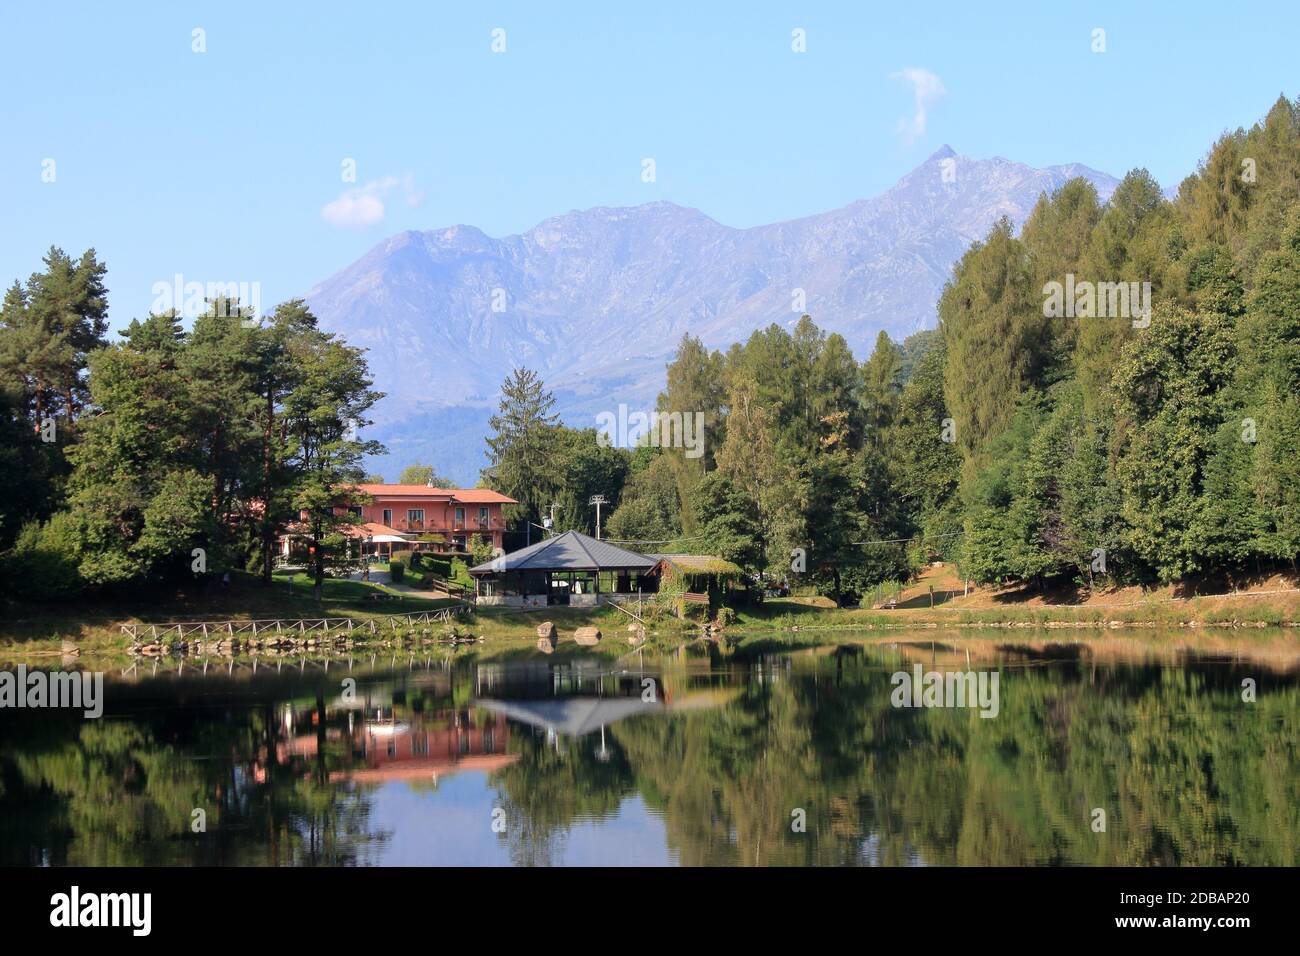 Automne 2019 : panorama classique d'un lac alpin dans une vallée d'origine morainique, Alpes italiennes dans la région du Piémont Banque D'Images